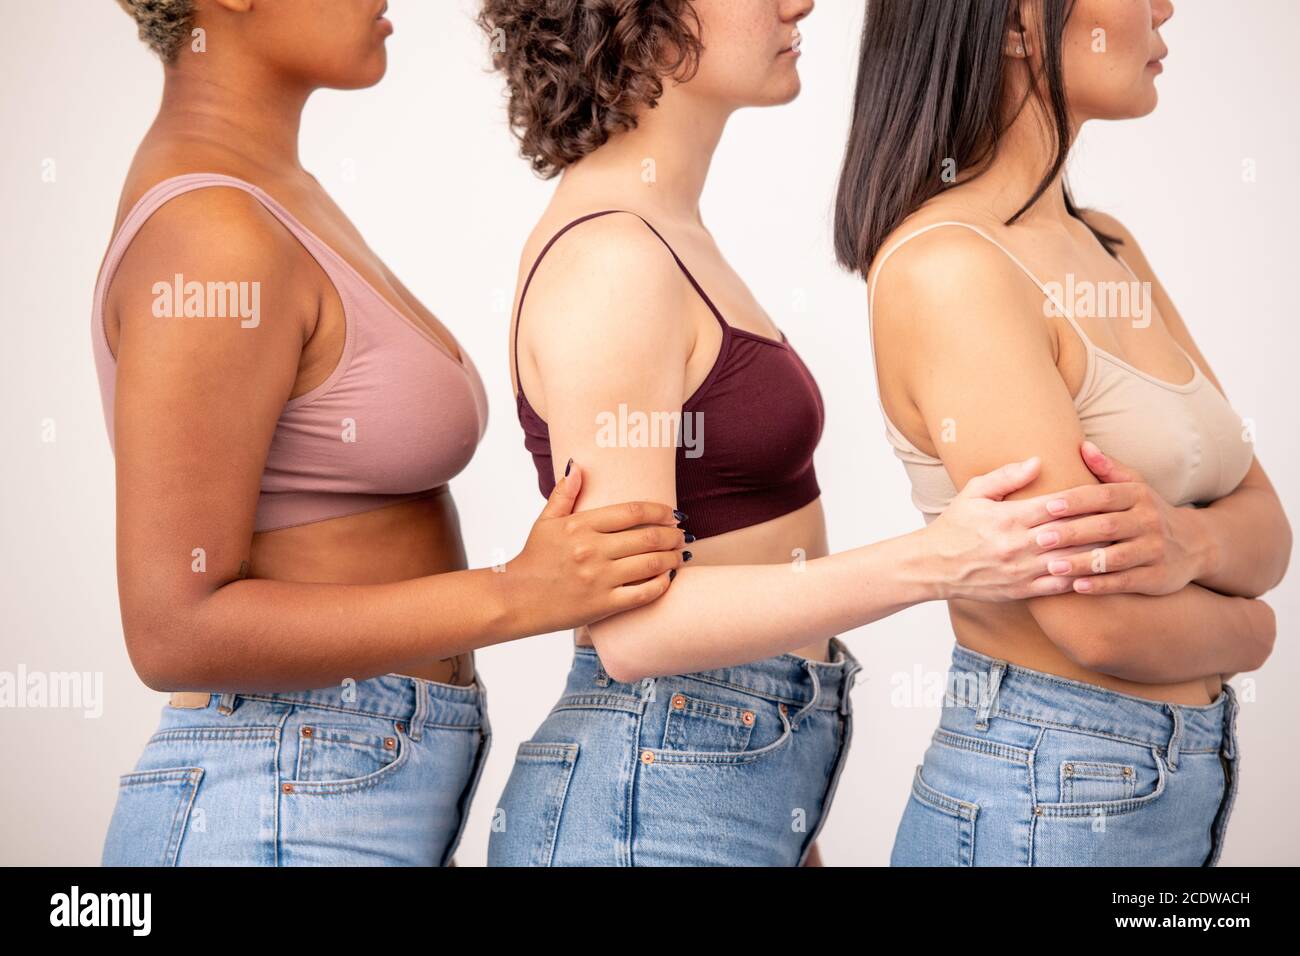 Vue latérale de trois jeunes femmes de différentes origines ethniques dans tanbureaux et jeans bleus Banque D'Images